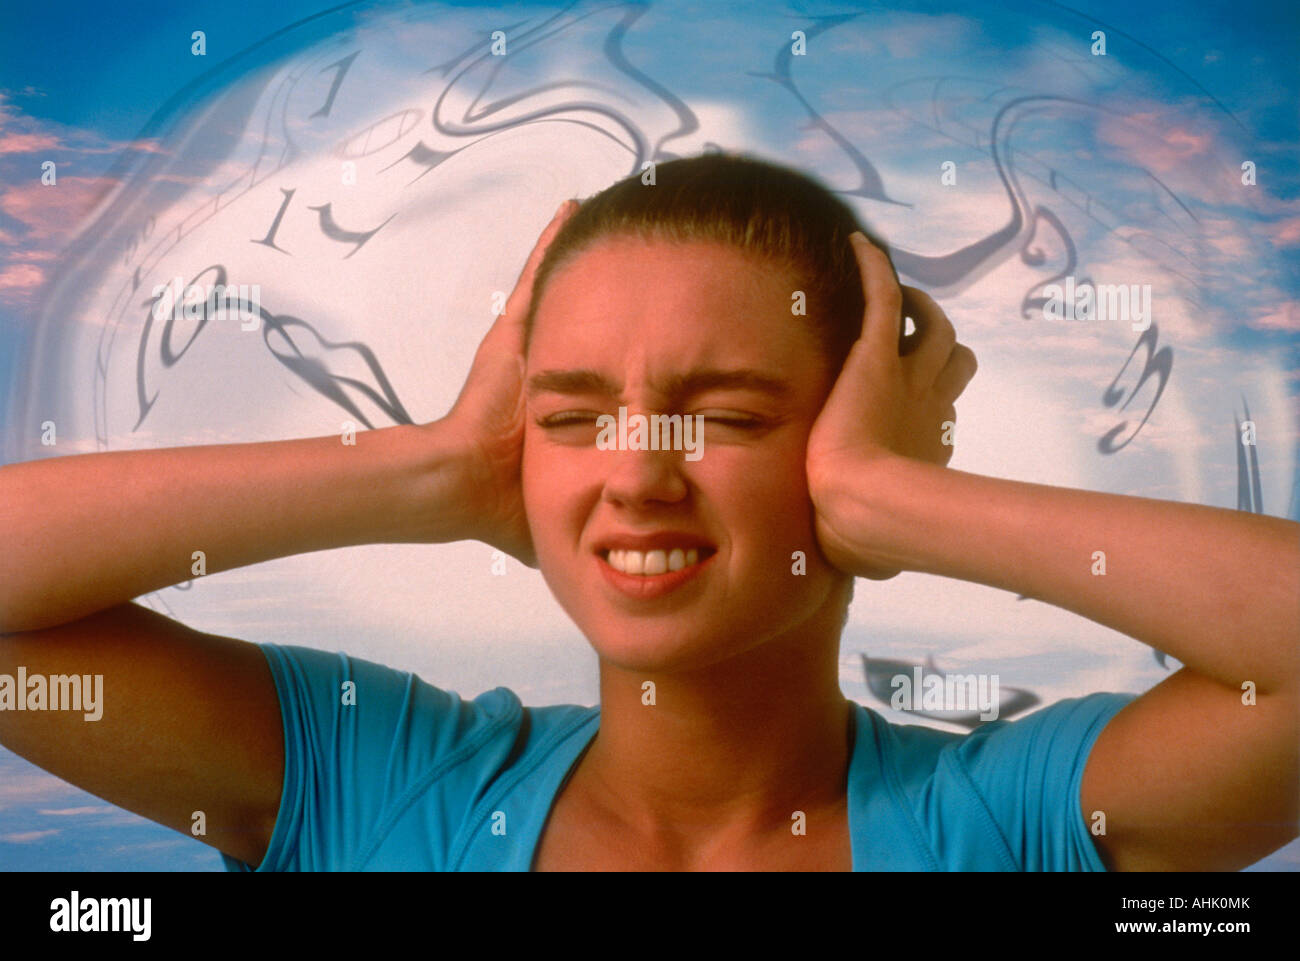 Ottimizzazione digitale simbolismo per il tinnito stress o ronzio nelle orecchie Foto Stock